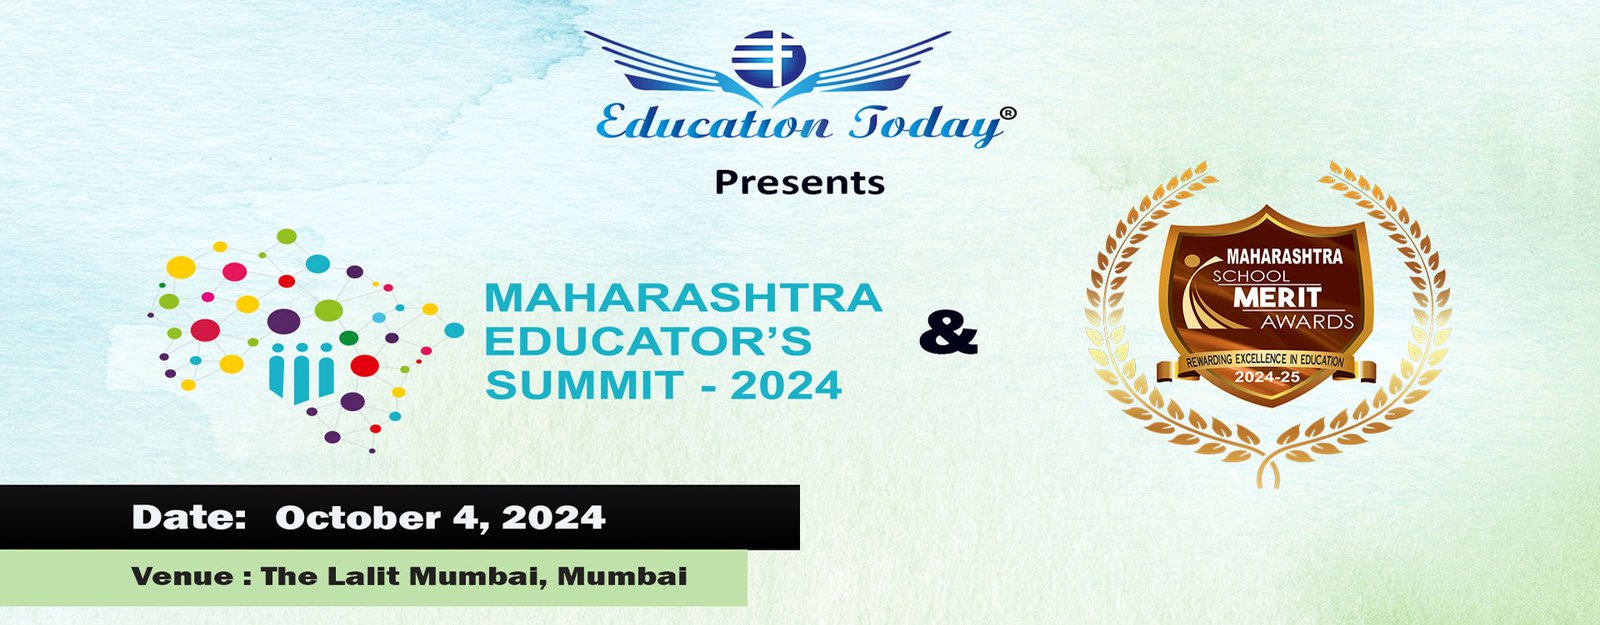 Maharashtra Educators' Summit & Awards 2024-25